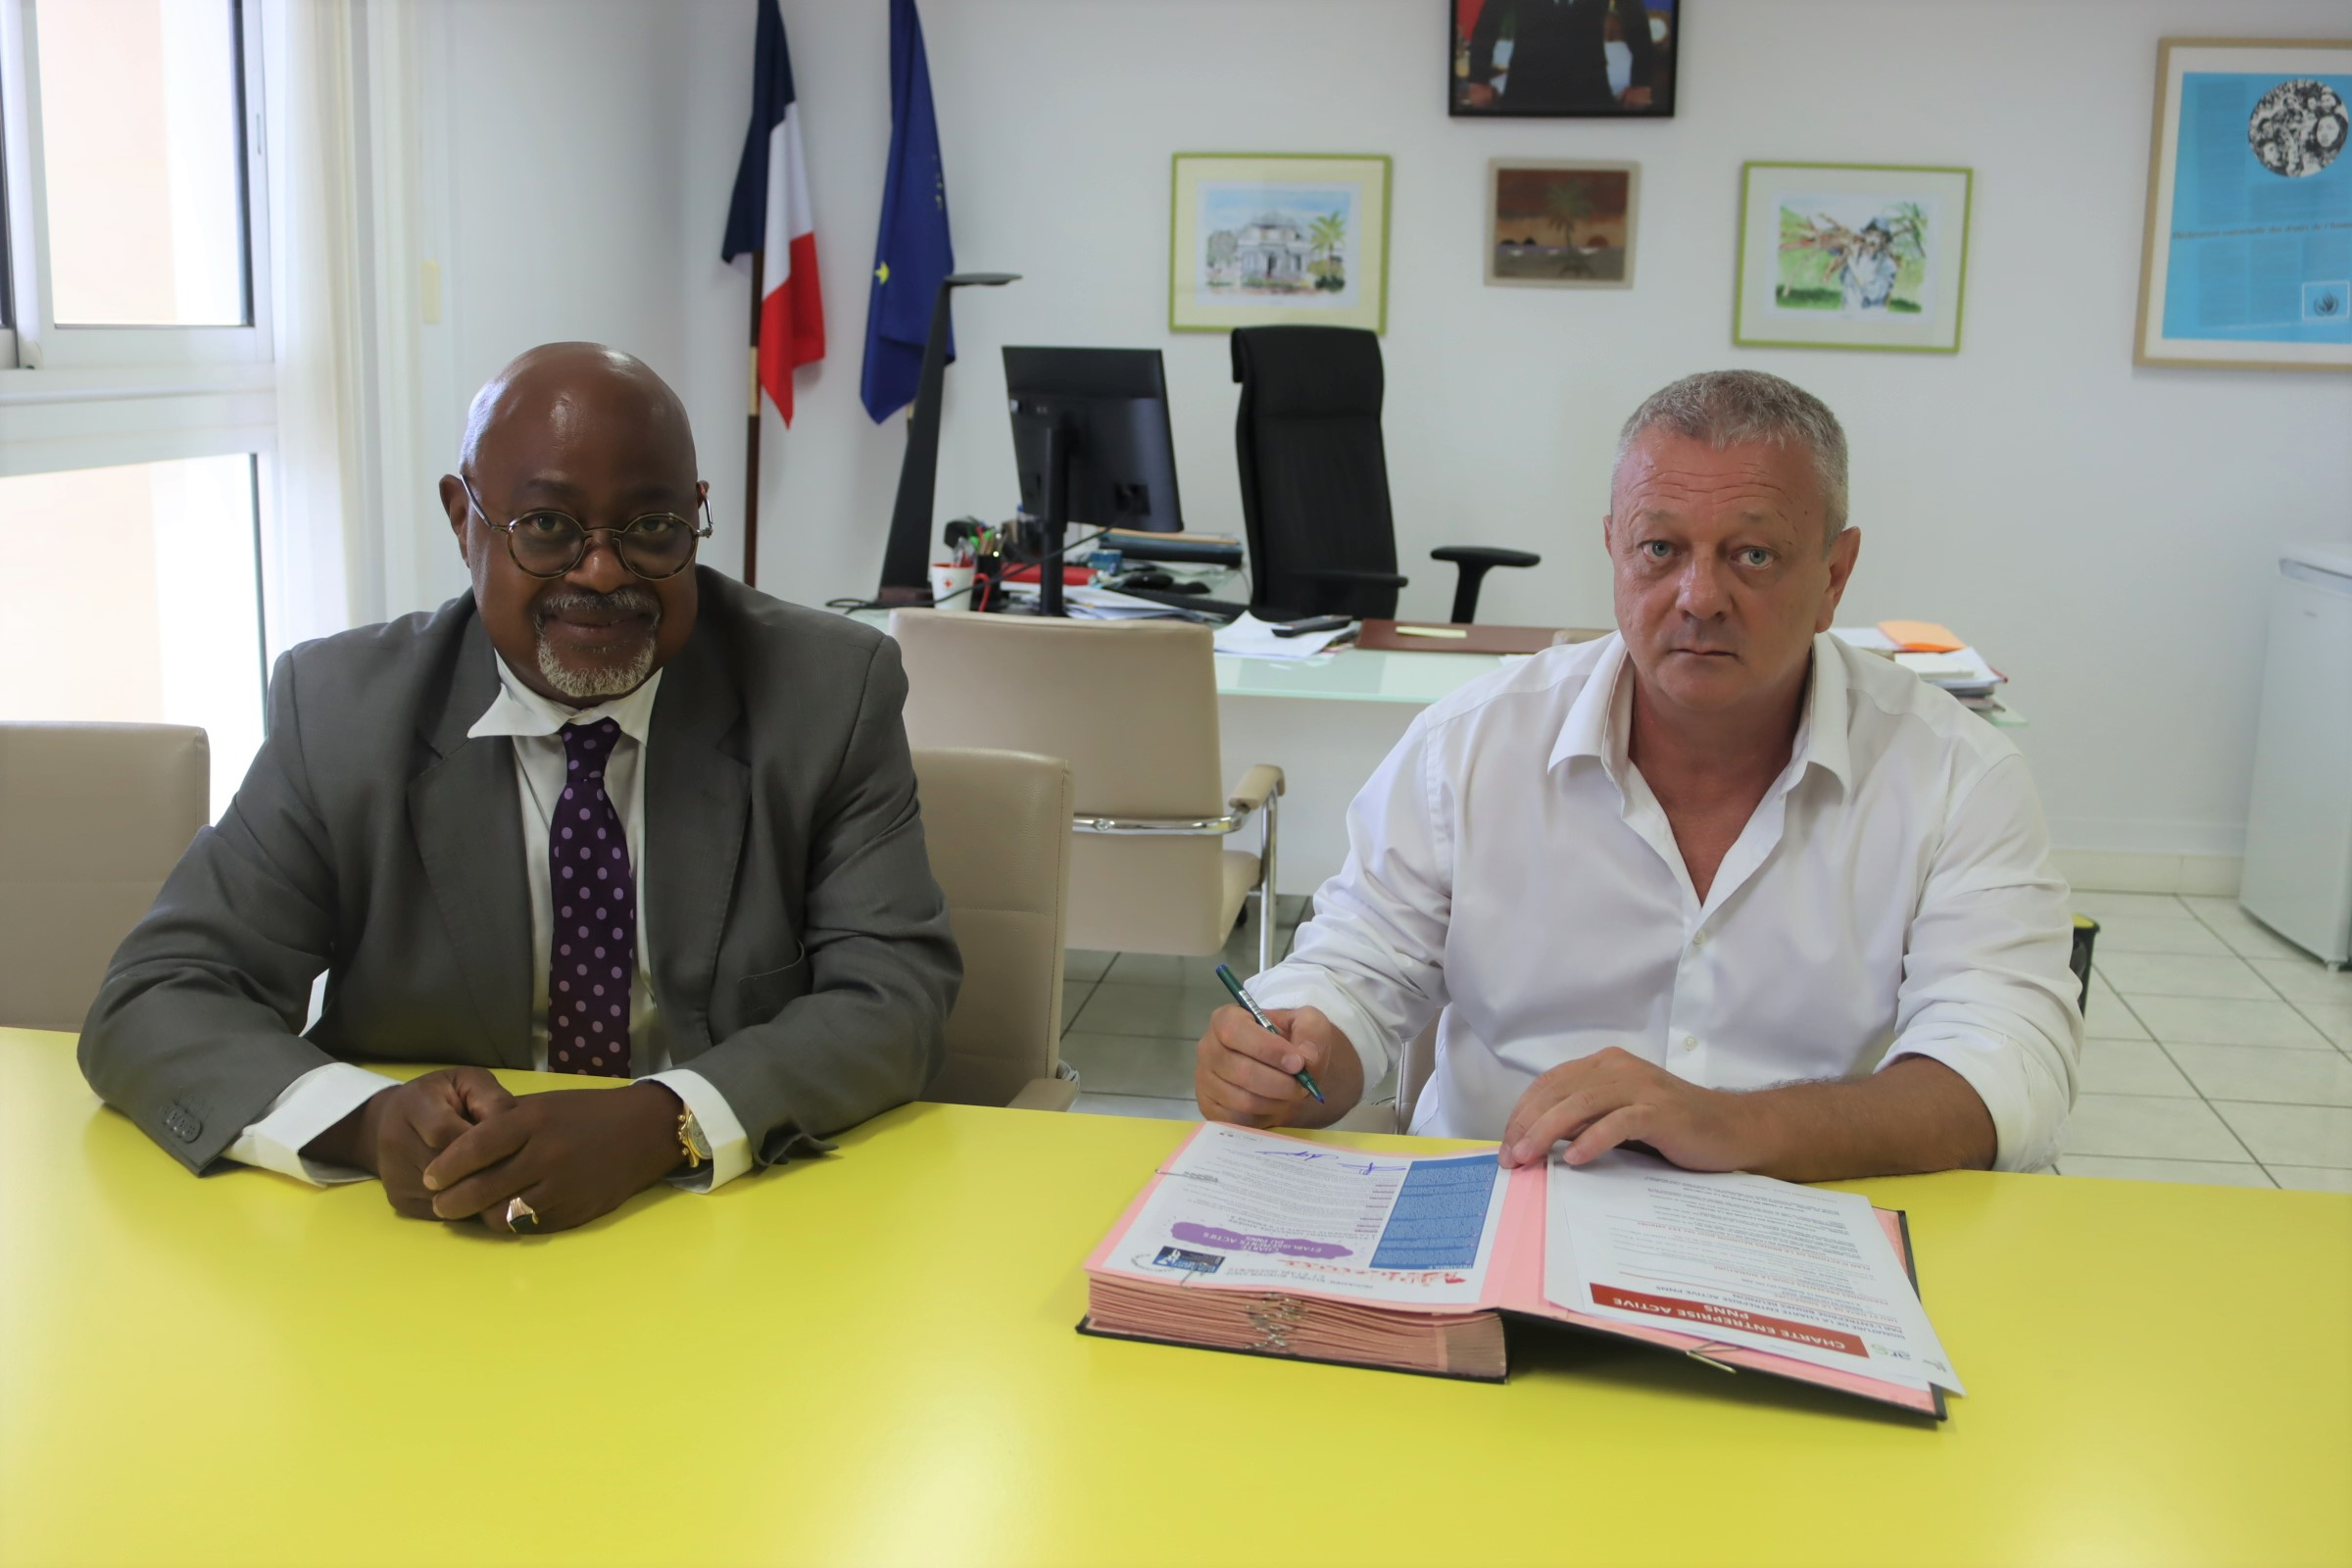 Légende : Patrick Liegeard Directeur régional Brink's Réunion (à droite) et Gérard Cotellon, Directeur Général de - ARS La Réunion